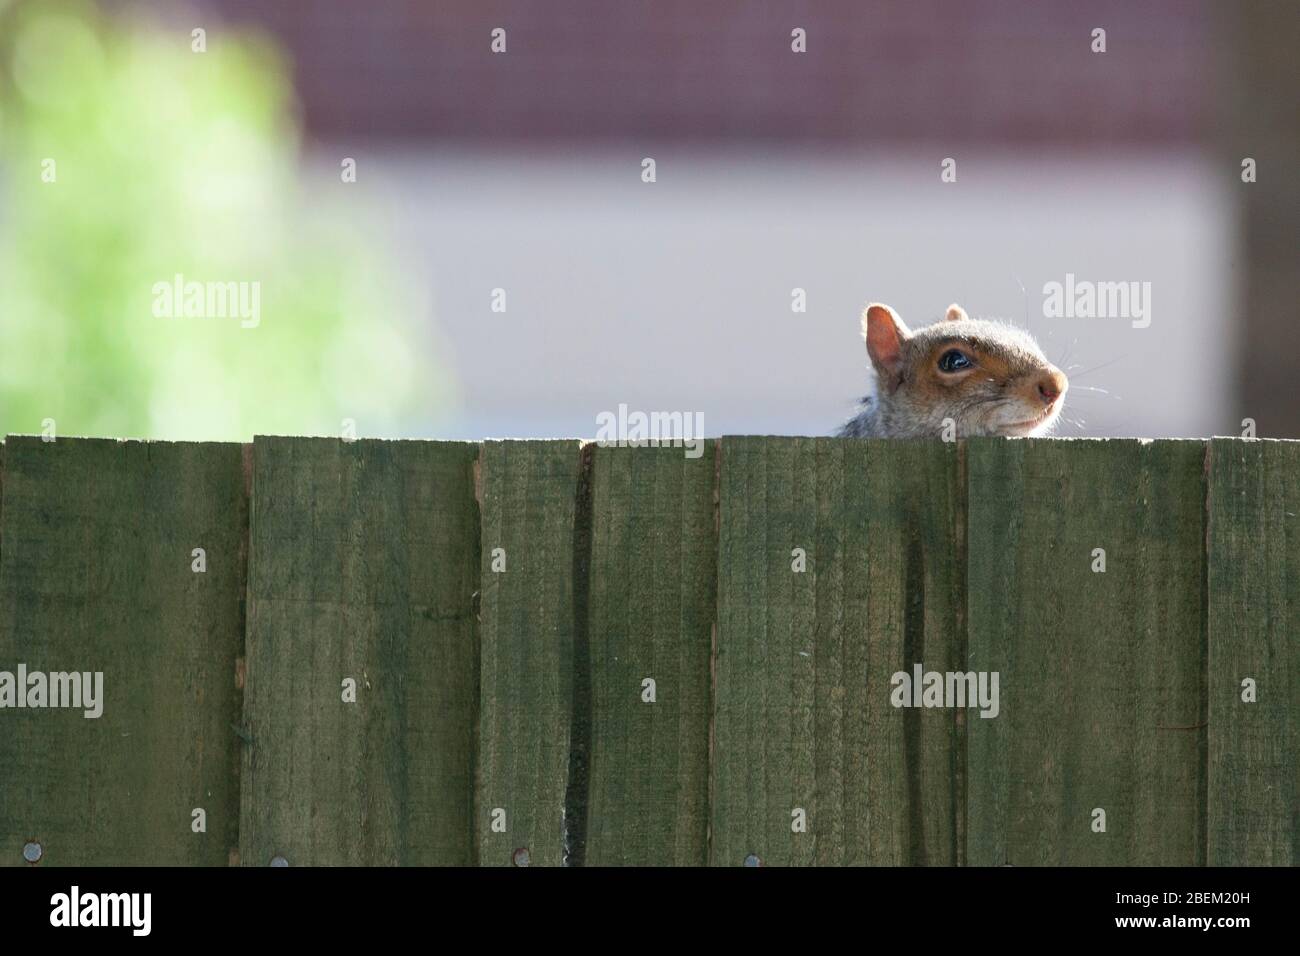 Londra, Regno Unito. 14 Aprile 2020. Tempo del Regno Unito, 14 aprile 2020: Uno scoiattolo grigio nel sobborgo di Lnodon di Clapham suona peek-a-boo con il fotografo da dietro una recinzione. Anna Watson/Alamy Live News Foto Stock